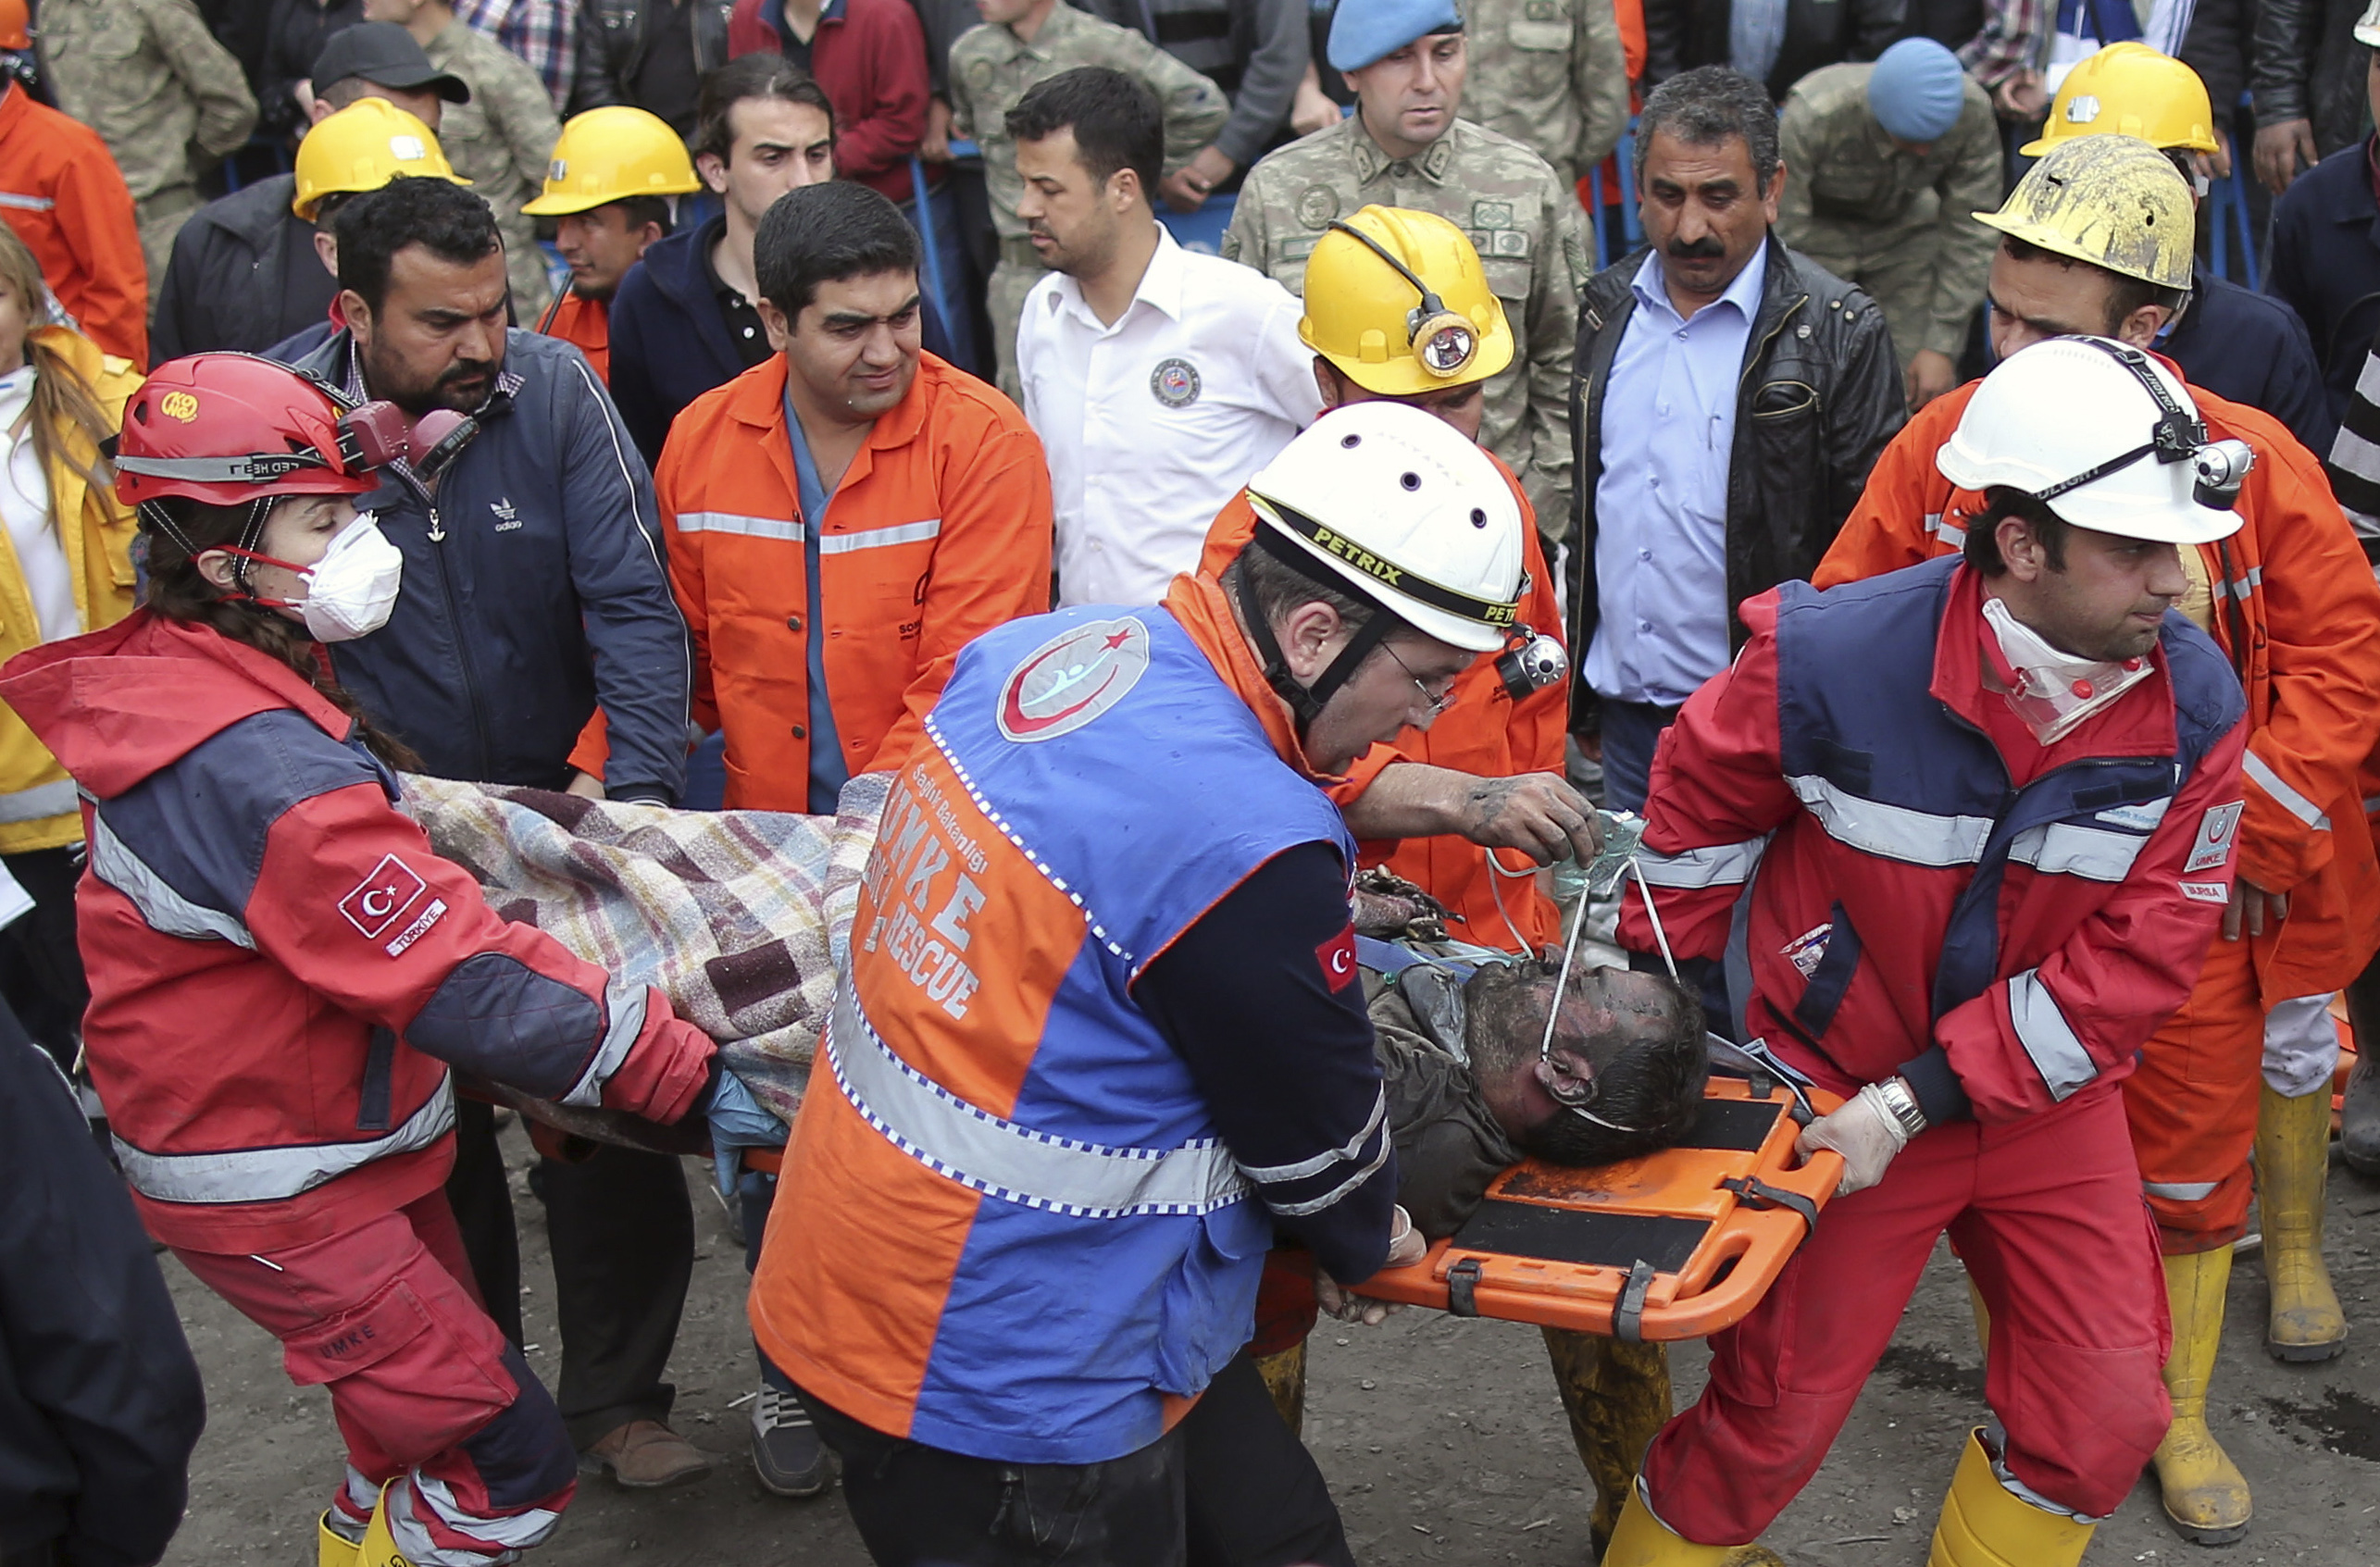 Βενιζέλος: Ετοιμοι να βοηθήσουμε την Τουρκία μετά το δυστύχημα